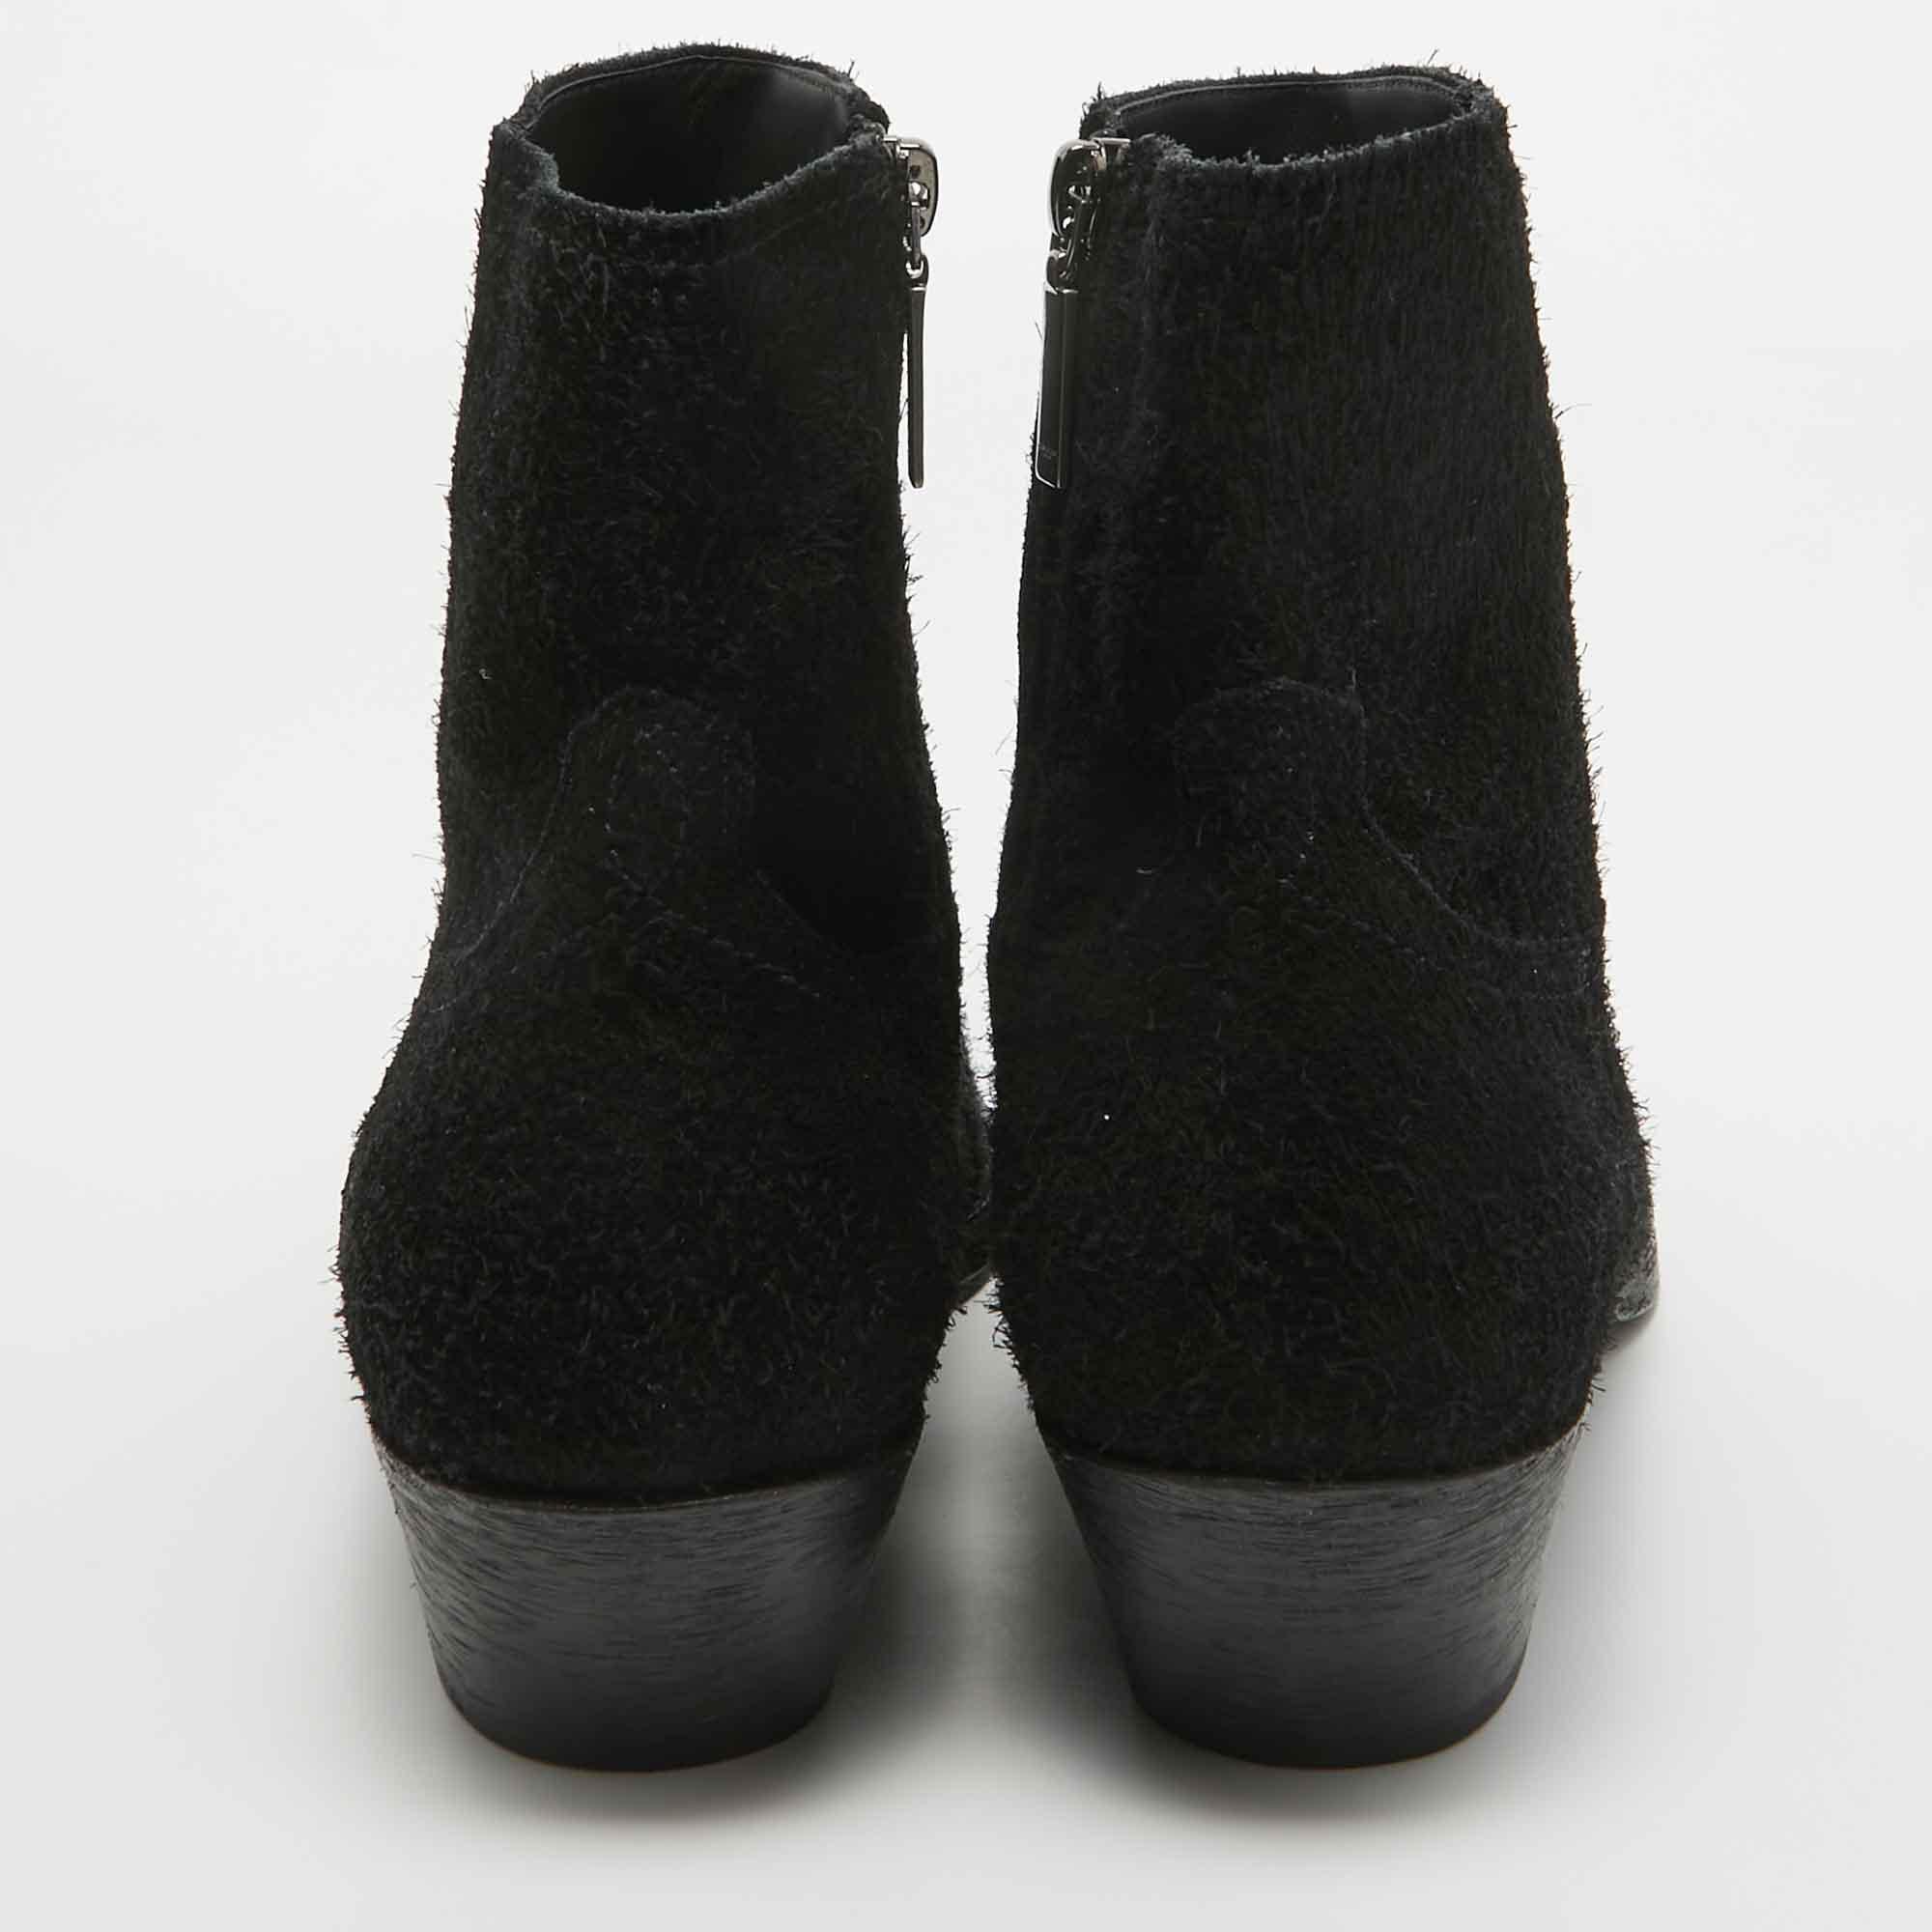 Men's Saint Laurent Black Leather Pointed Toe Boots Size 43